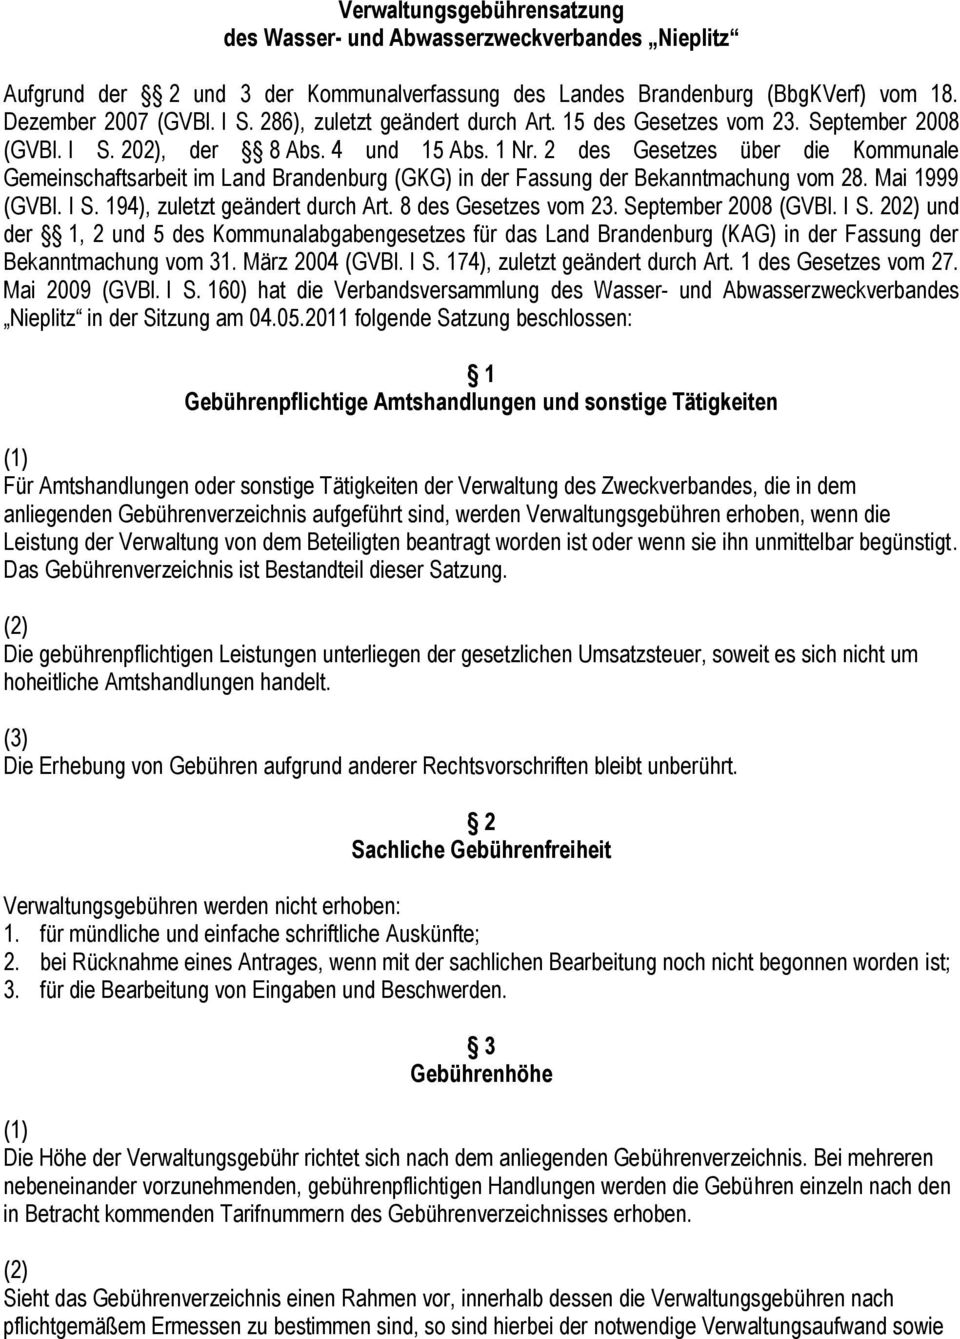 2 des Gesetzes über die Kommunale Gemeinschaftsarbeit im Land Brandenburg (GKG) in der Fassung der Bekanntmachung vom 28. Mai 1999 (GVBl. I S. 194), zuletzt geändert durch Art. 8 des Gesetzes vom 23.